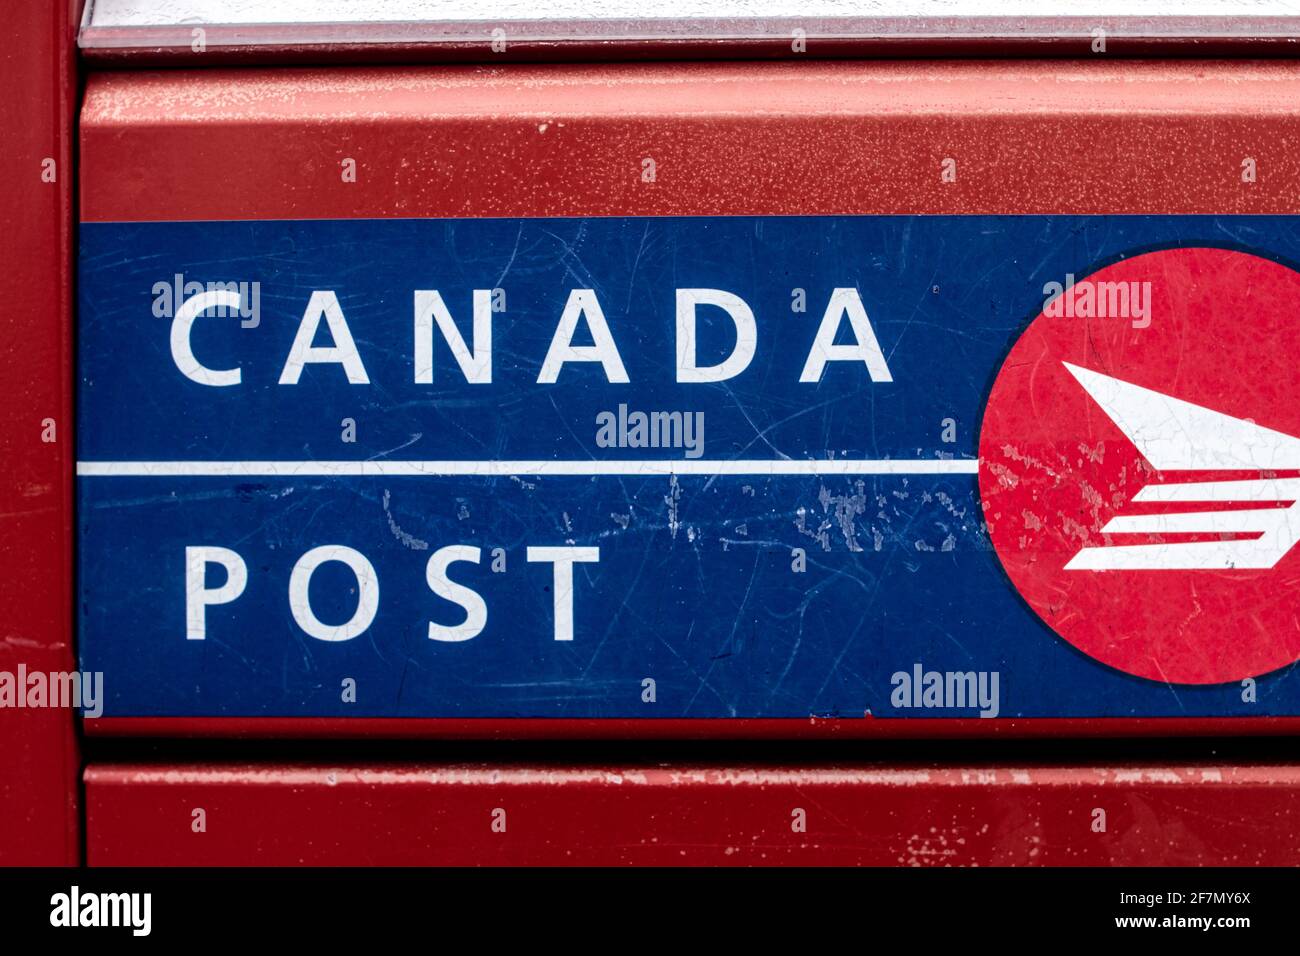 Londres, Ontario, Canadá - Febrero de 15 2021: Rojo, azul y blanco Canadá post metal letterbox, Crisp shot y primer plano del logotipo. Foto de stock